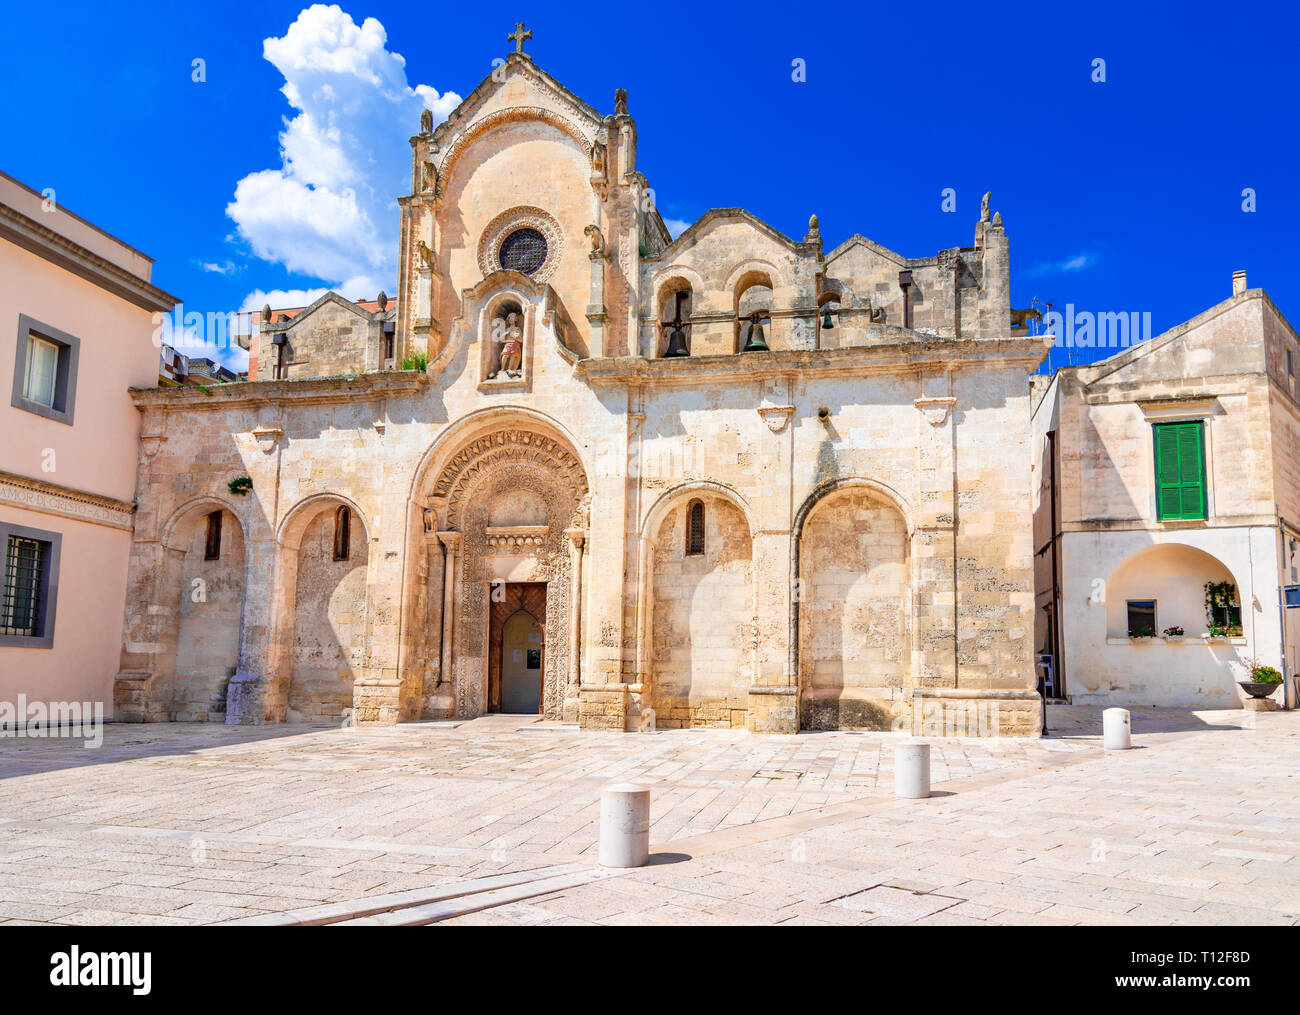 Matera, Basilicata, Italia: La iglesia medieval de San Giovanni Battista o a San Juan Bautista, en el casco antiguo de la ciudad patrimonio de la Unesco y EUR Foto de stock